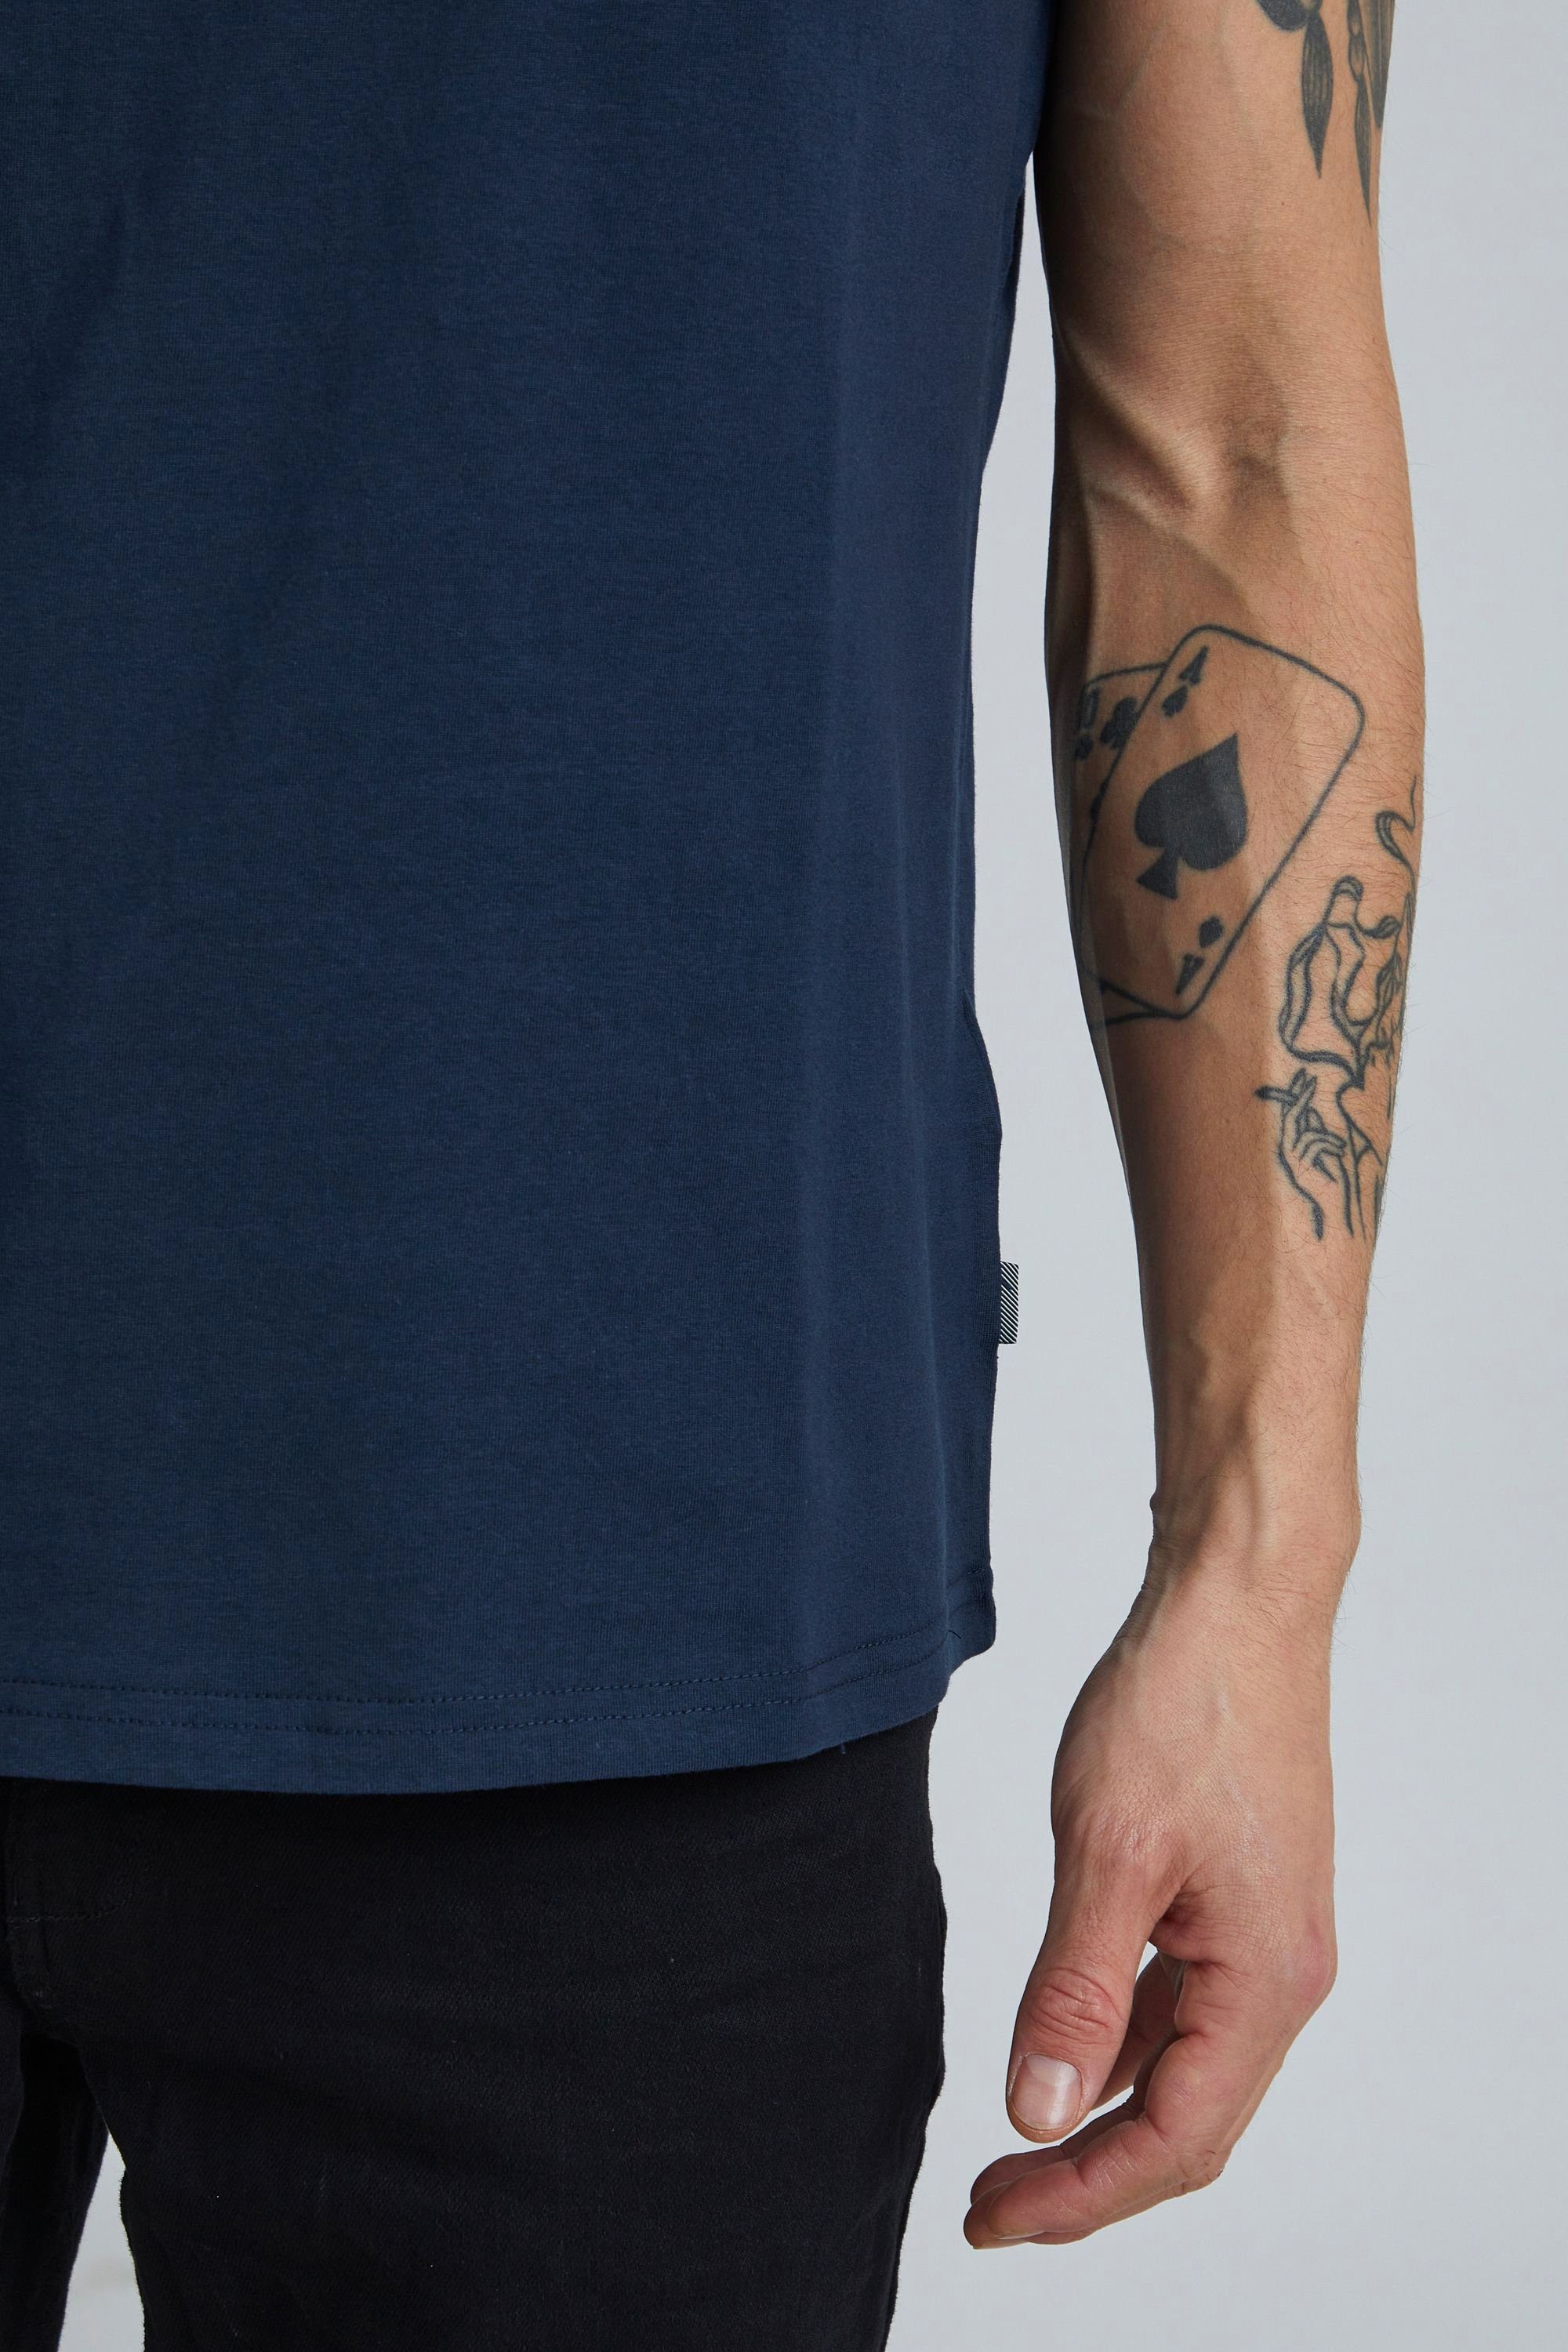 Solid T-Shirt SDGaylin mit B T-Shirt INSIGNIA Brusttasche (791991)